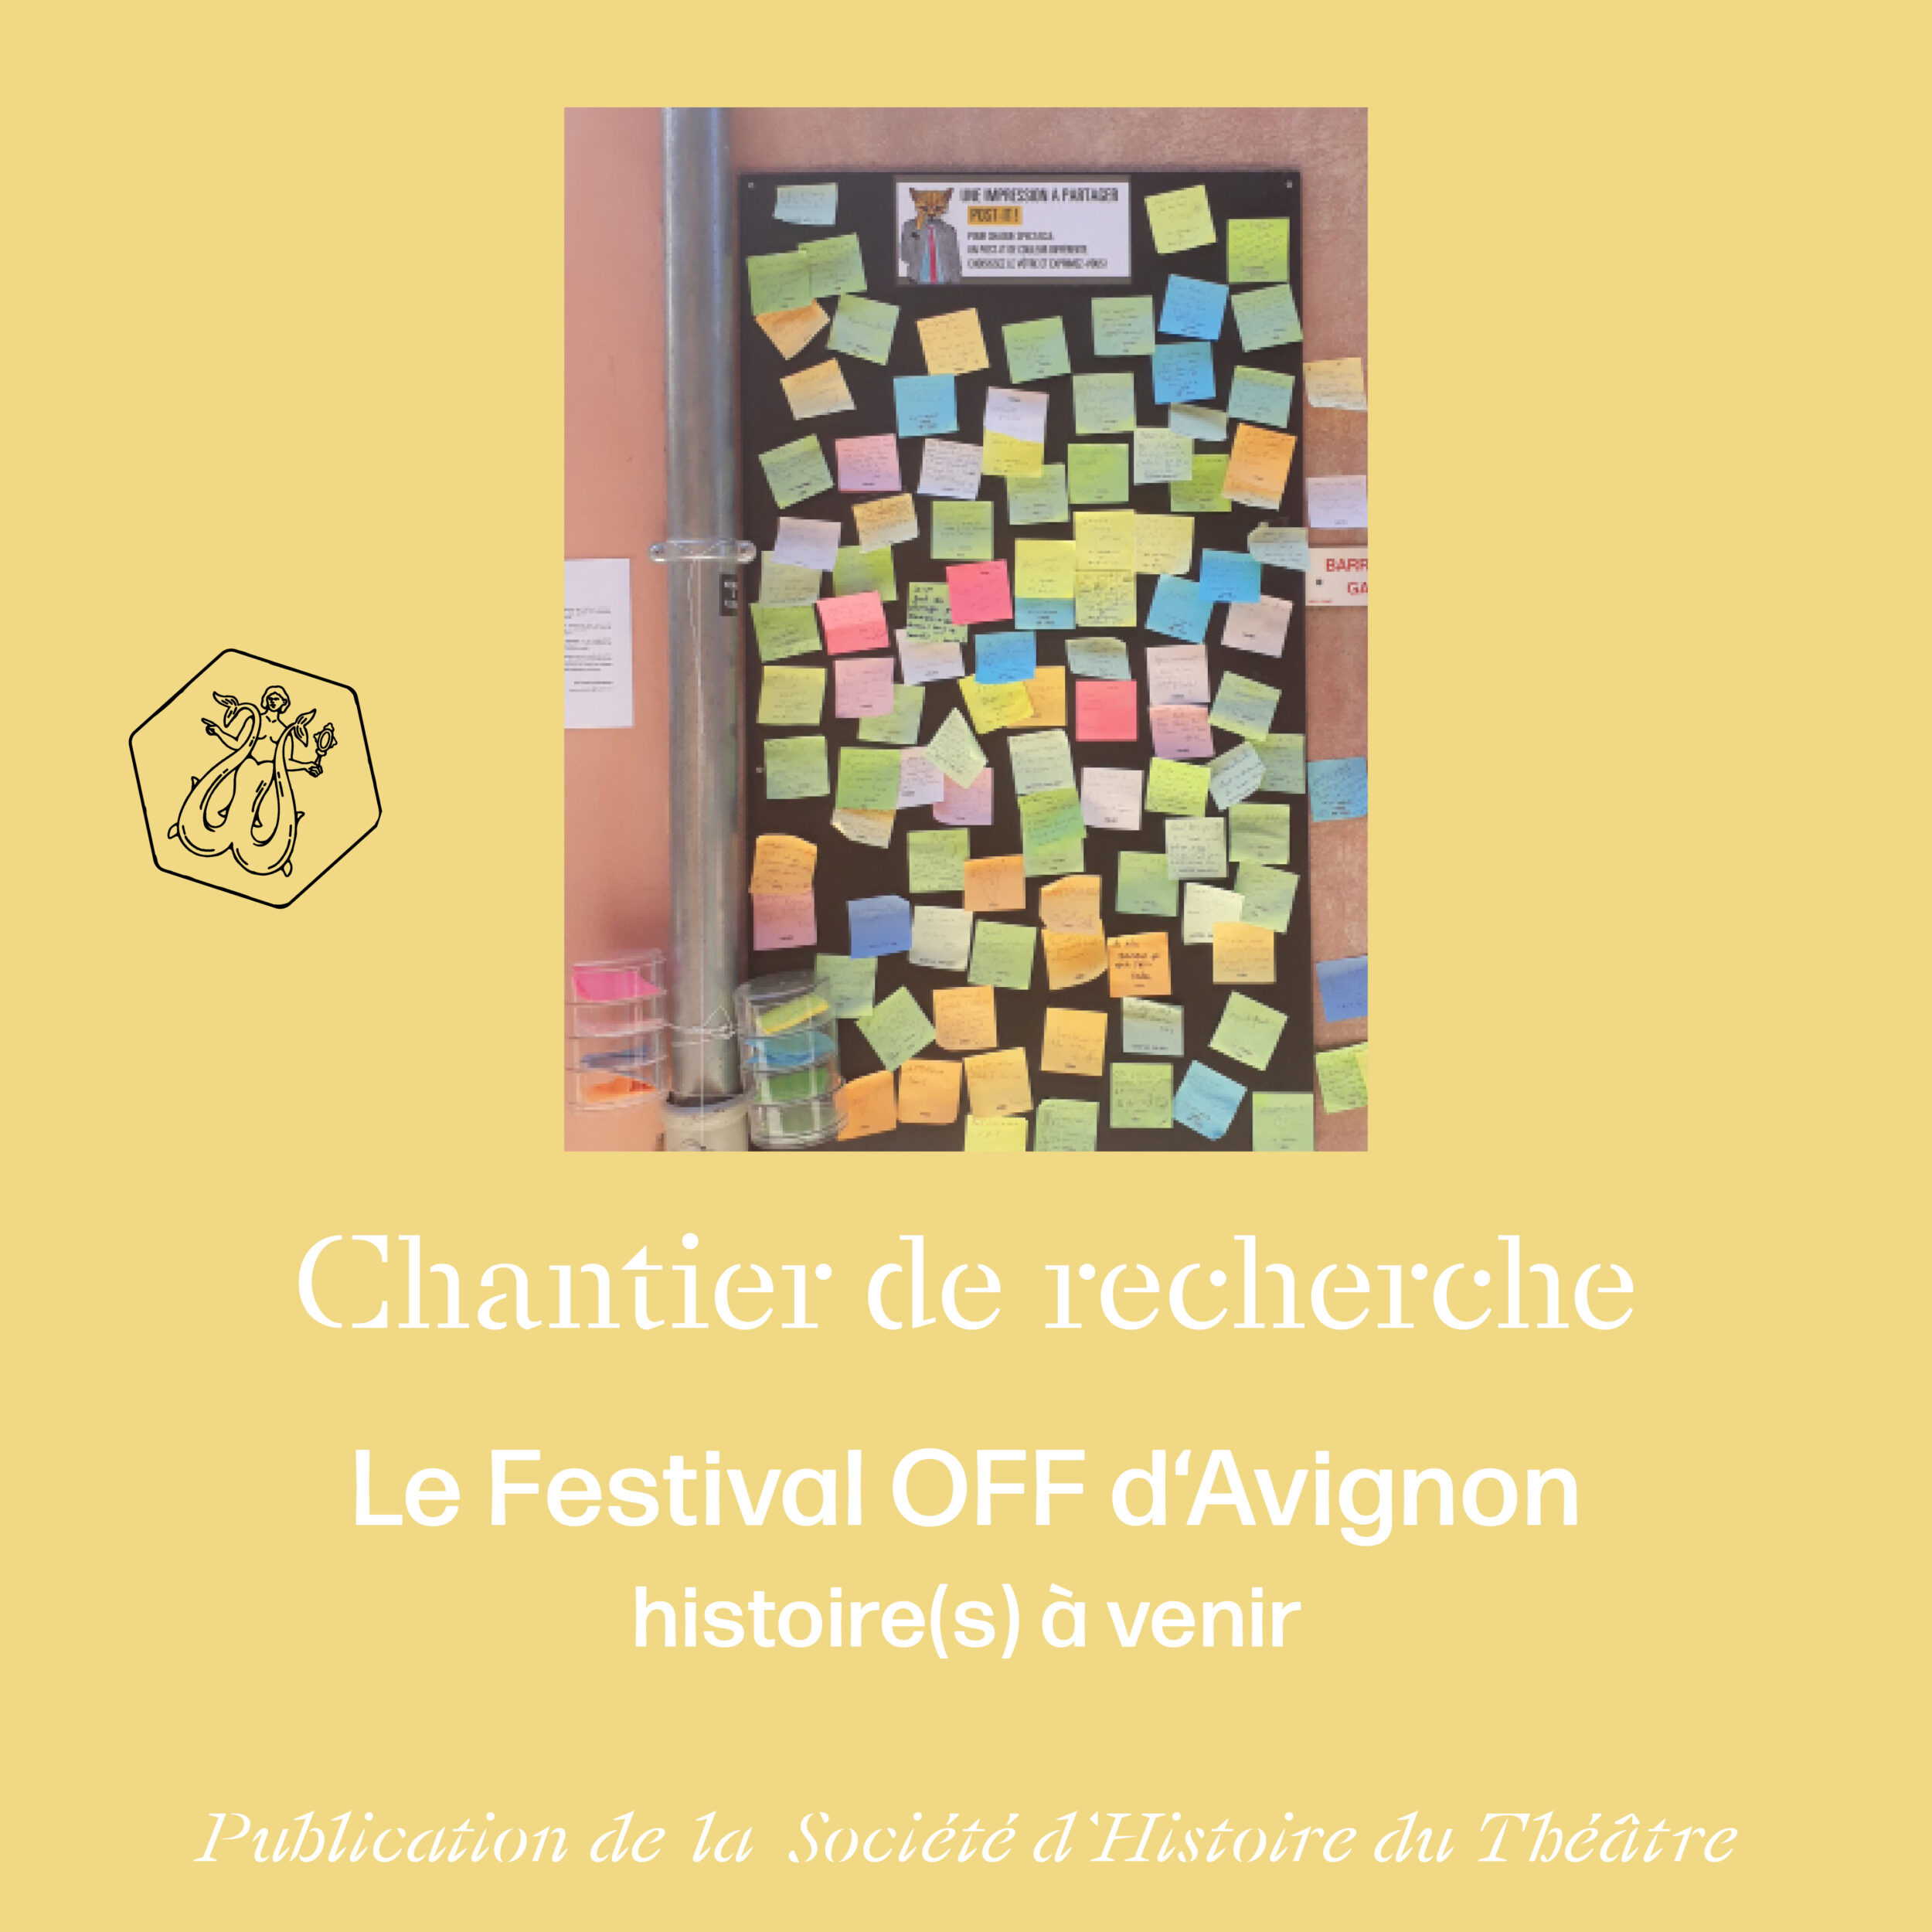 Histoire du Festival OFF d’Avignon